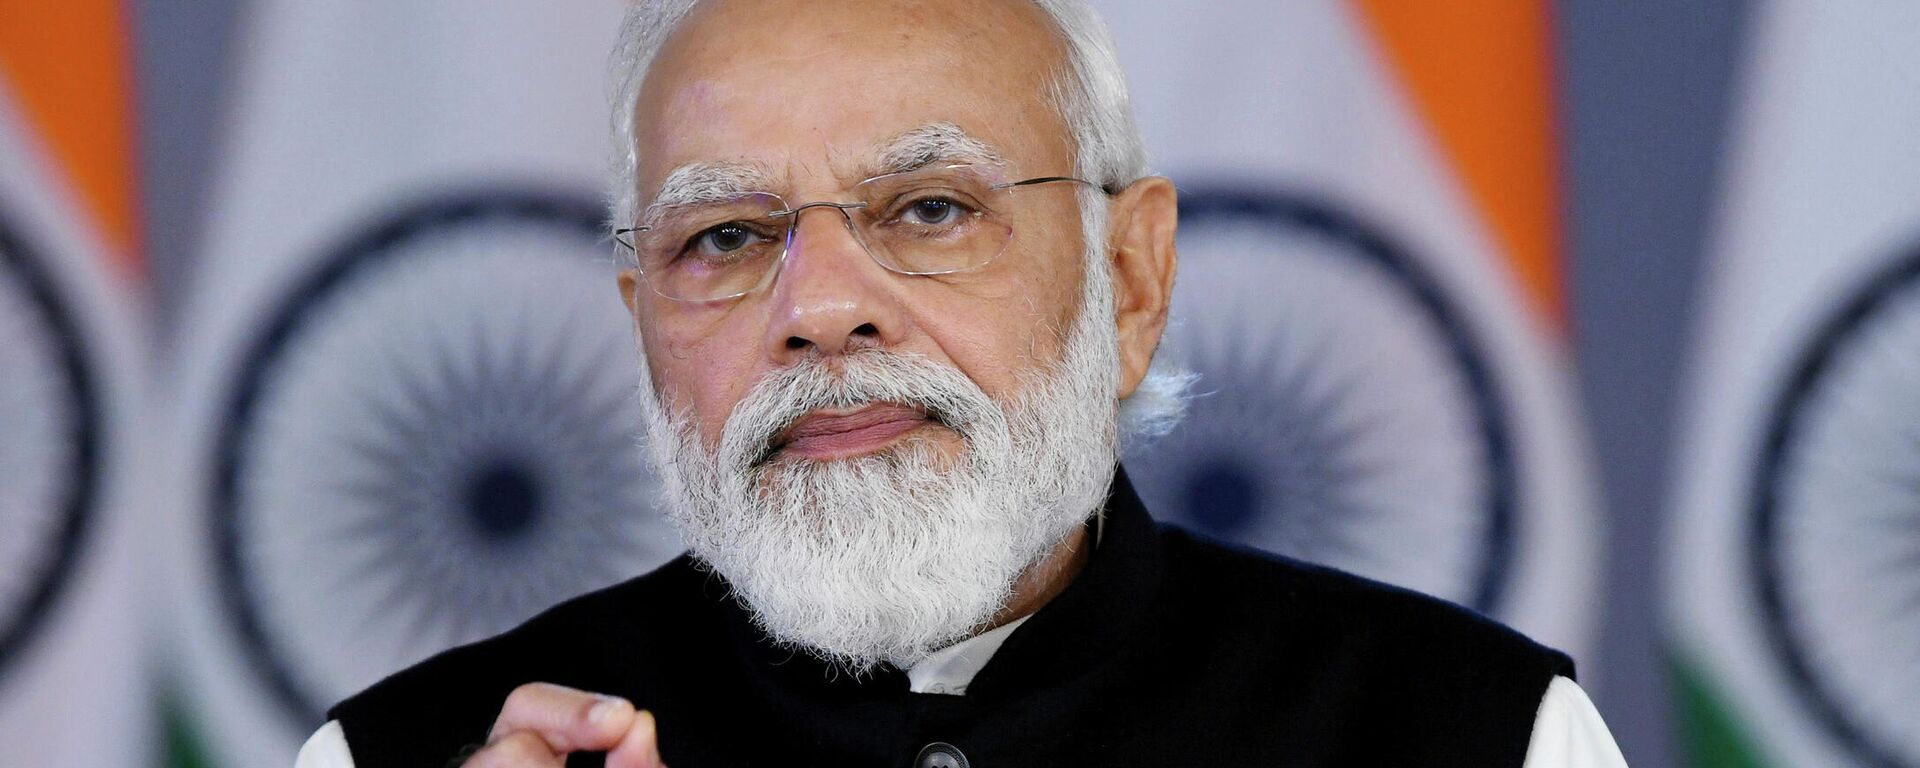 Primeiro-ministro indiano, Narendra Modi, abordando a Agenda Davos 2022 por meio de reunião virtual, em Nova Deli, na Índia, em 17 de janeiro de 2022 (foto divulgada pela assessoria de imprensa da Índia) - Sputnik Brasil, 1920, 18.10.2022